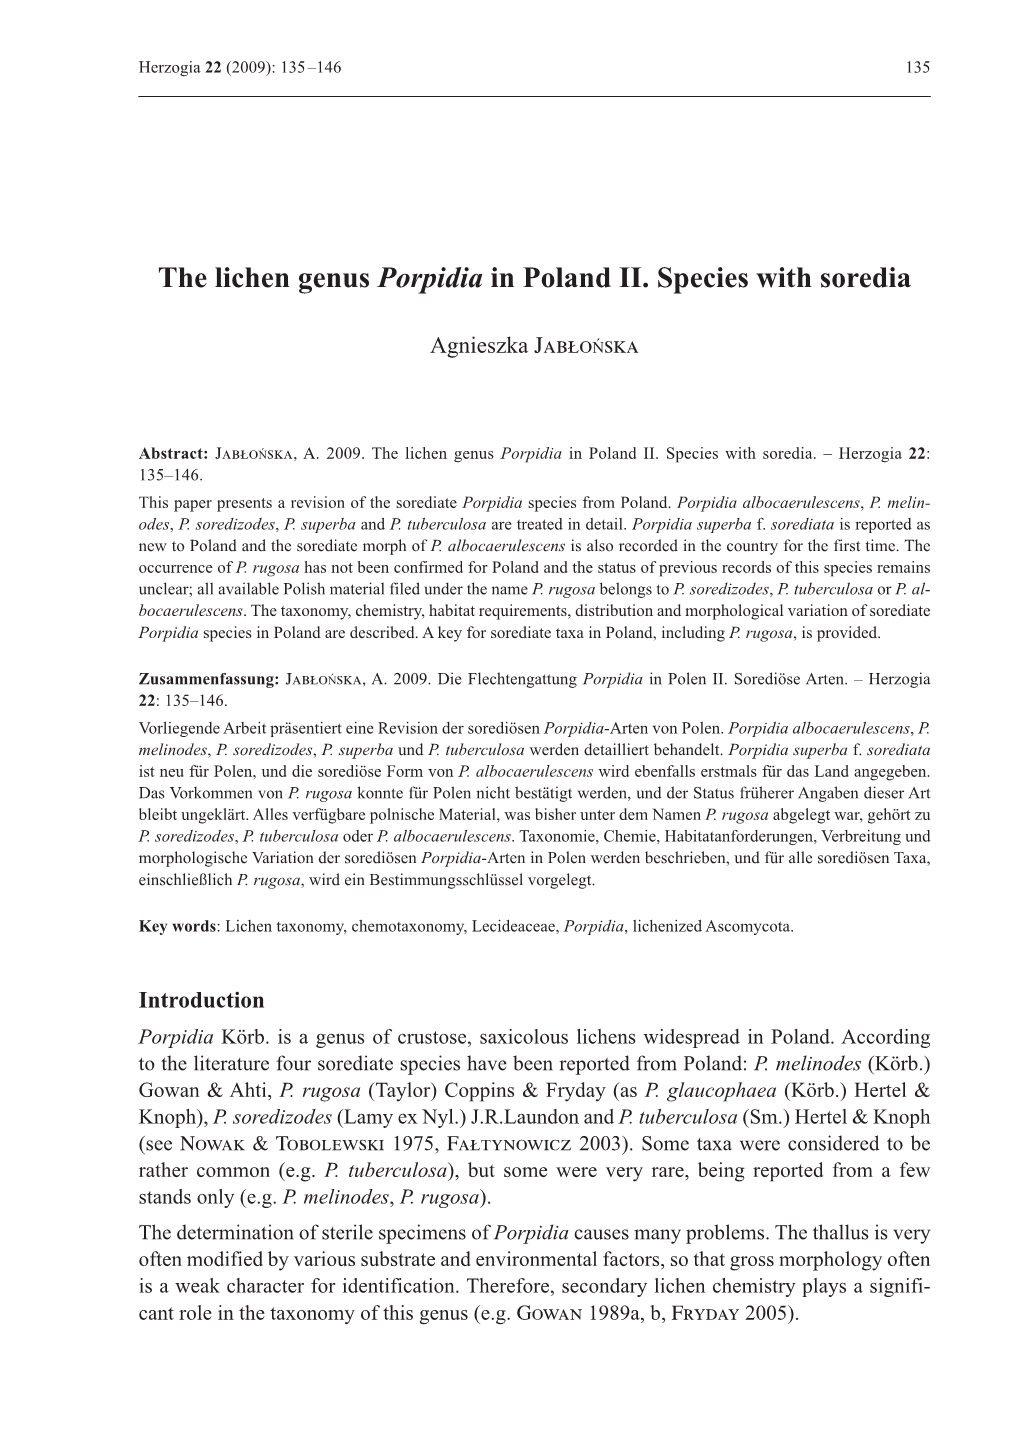 The Lichen Genus Porpidia in Poland II. Species with Soredia